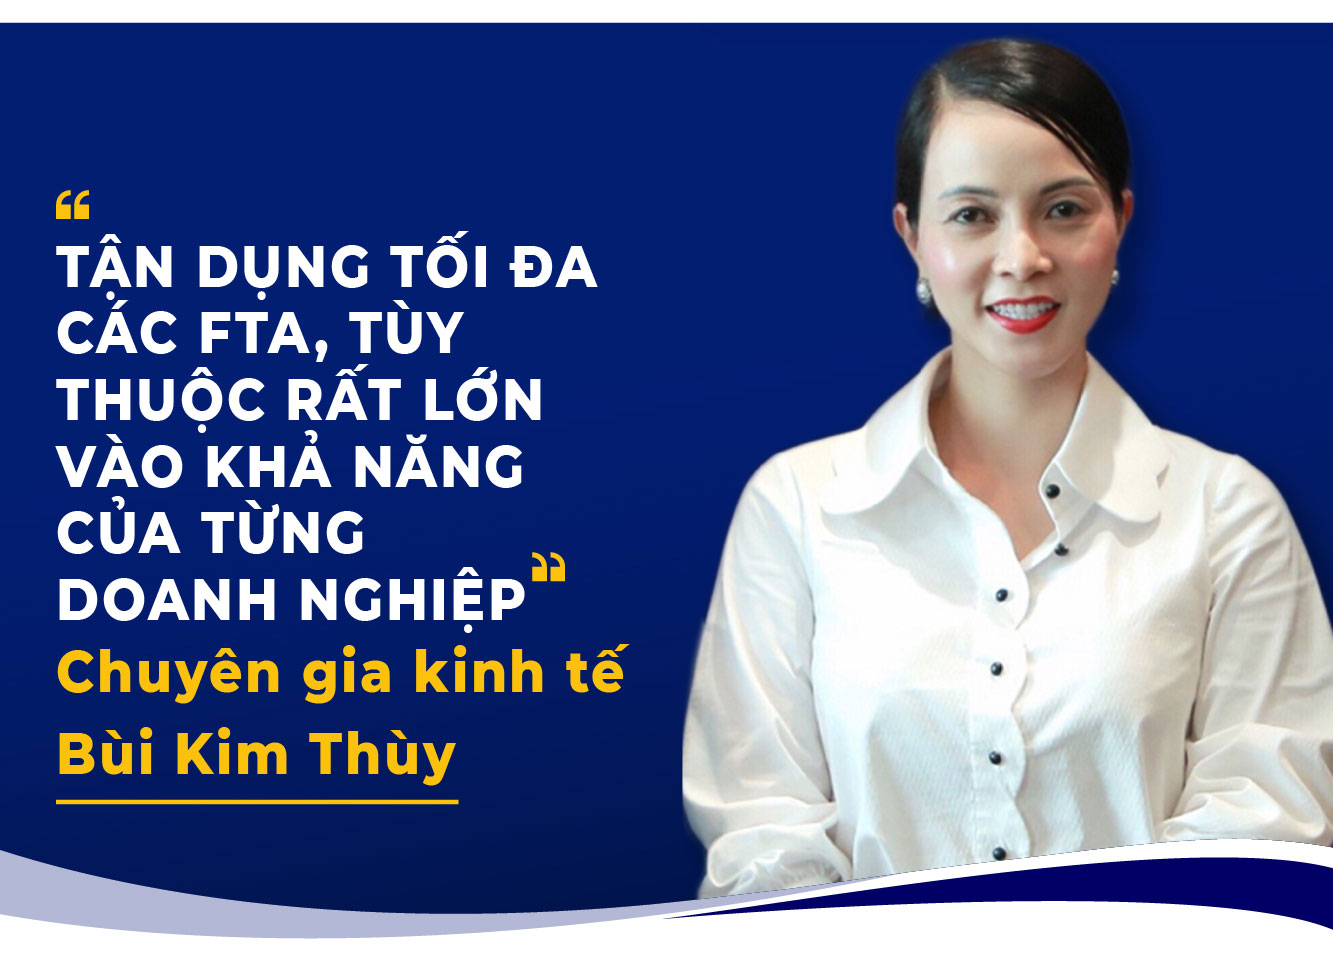 TẬN DỤNG TỐI ĐA CÁC FTA, TÙY THUỘC RẤT LỚN VÀO KHẢ NĂNG CỦA TỪNG DOANH NGHIỆP Chuyên gia kinh tế Bùi Kim Thùy